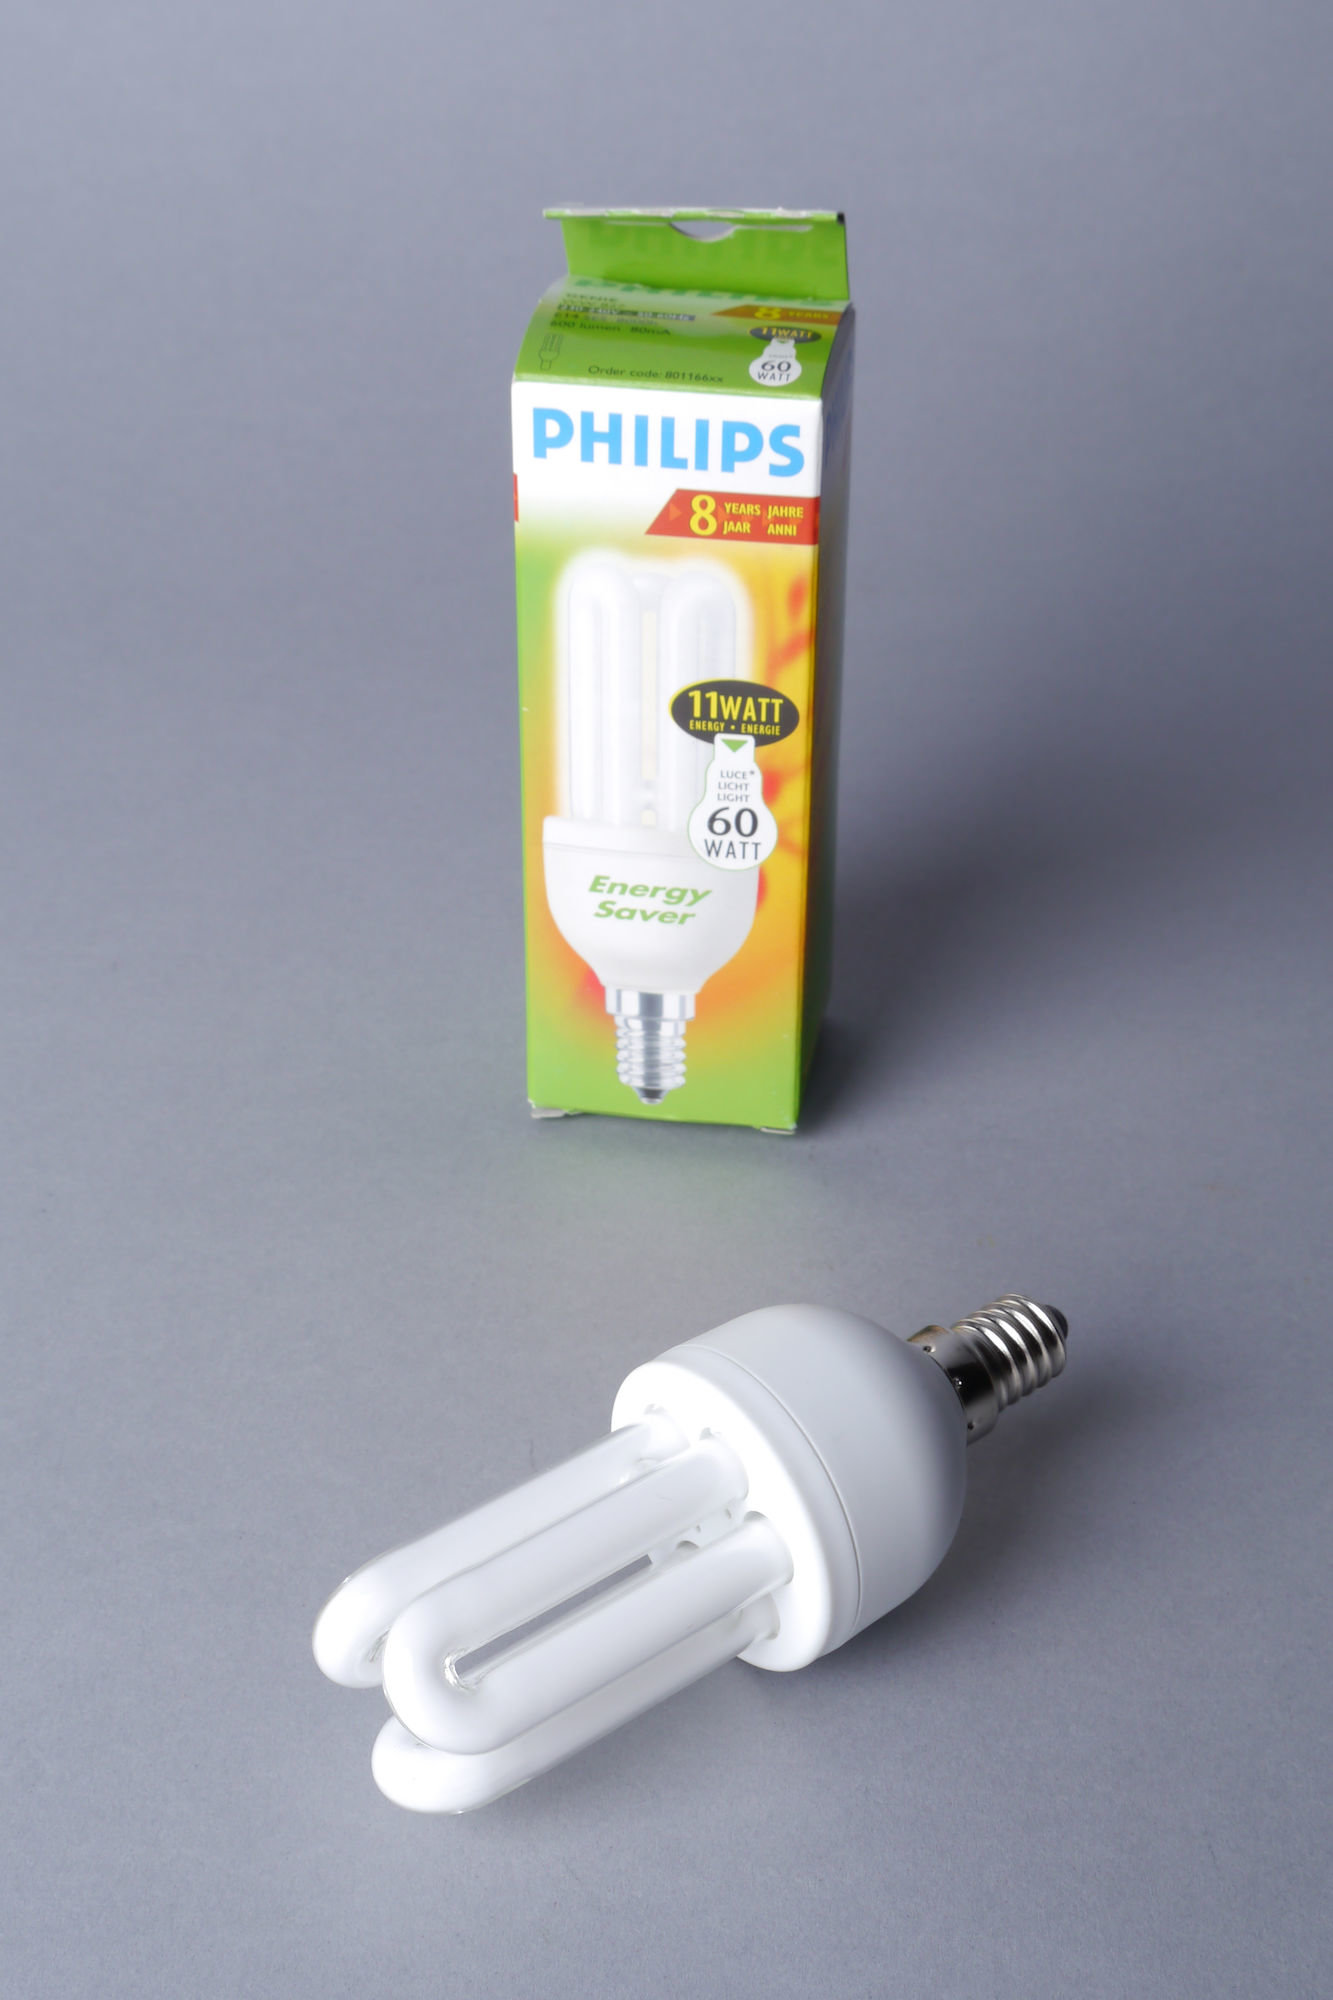 Lagedruk gasontladingslamp van het merk Philips